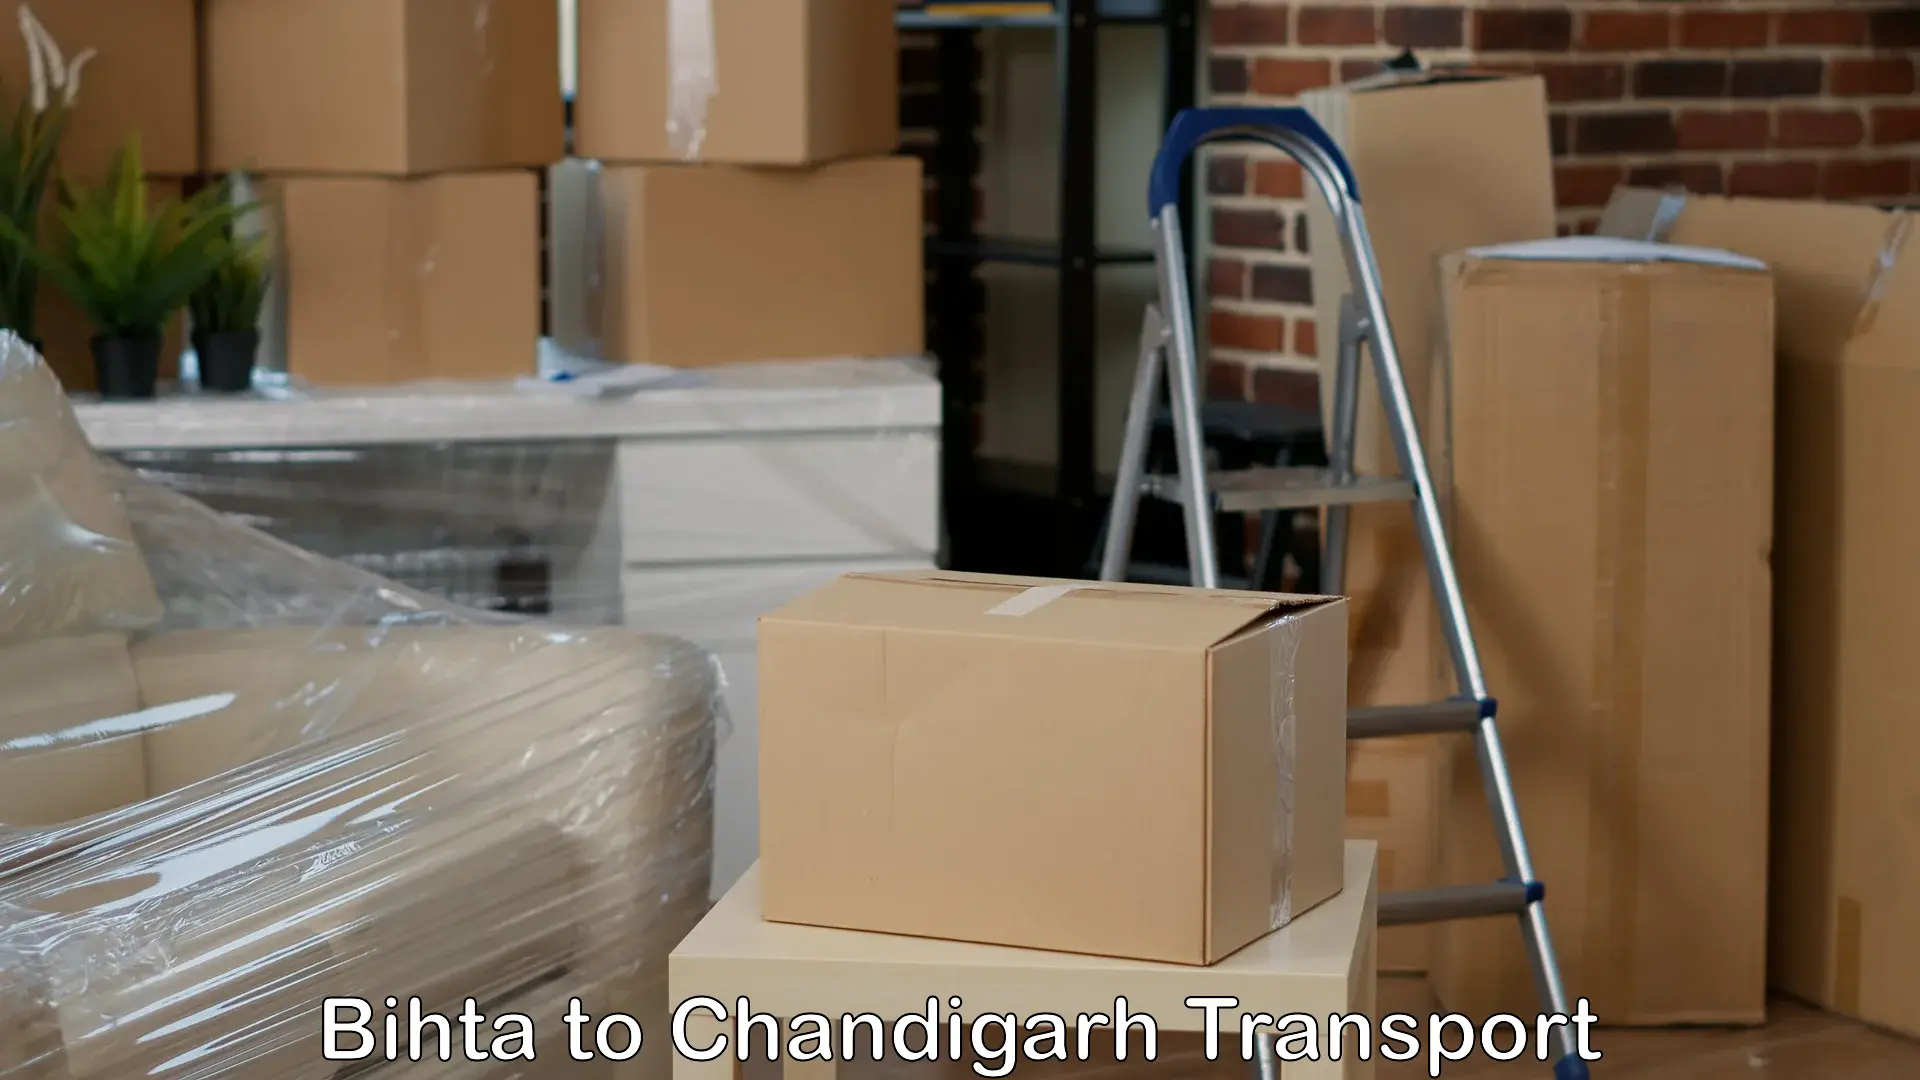 Air cargo transport services Bihta to Chandigarh